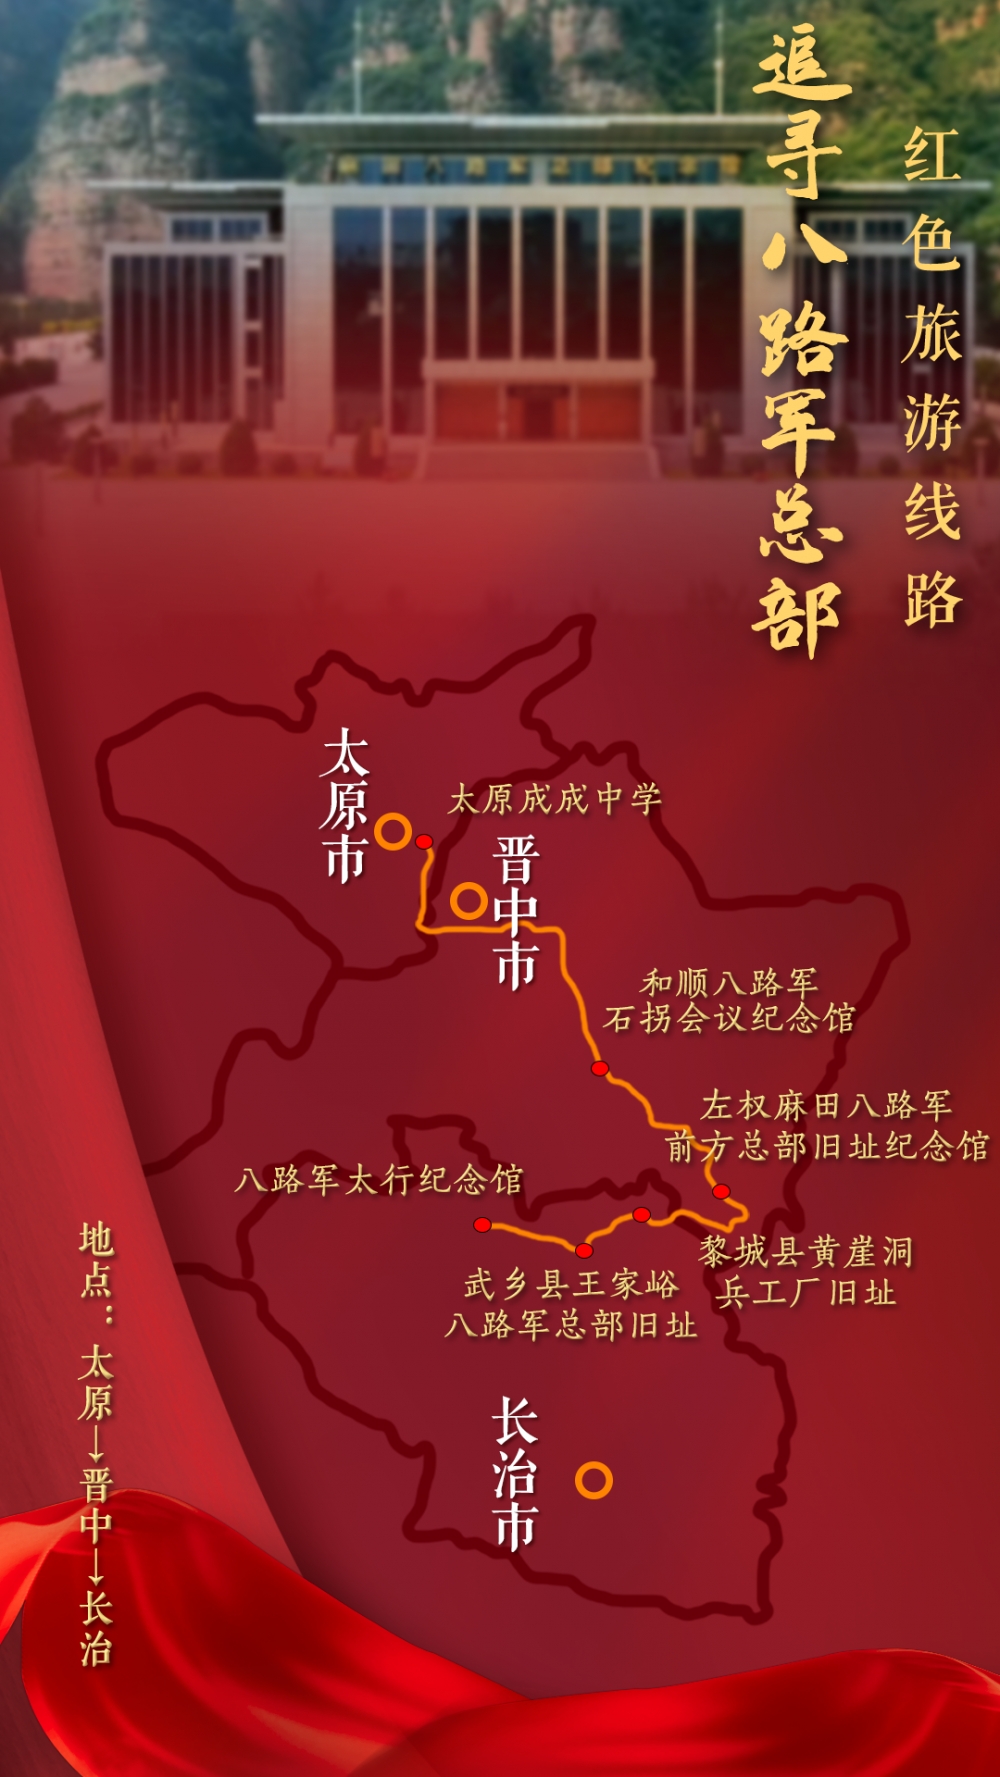 西安红色旅游线路设计图片